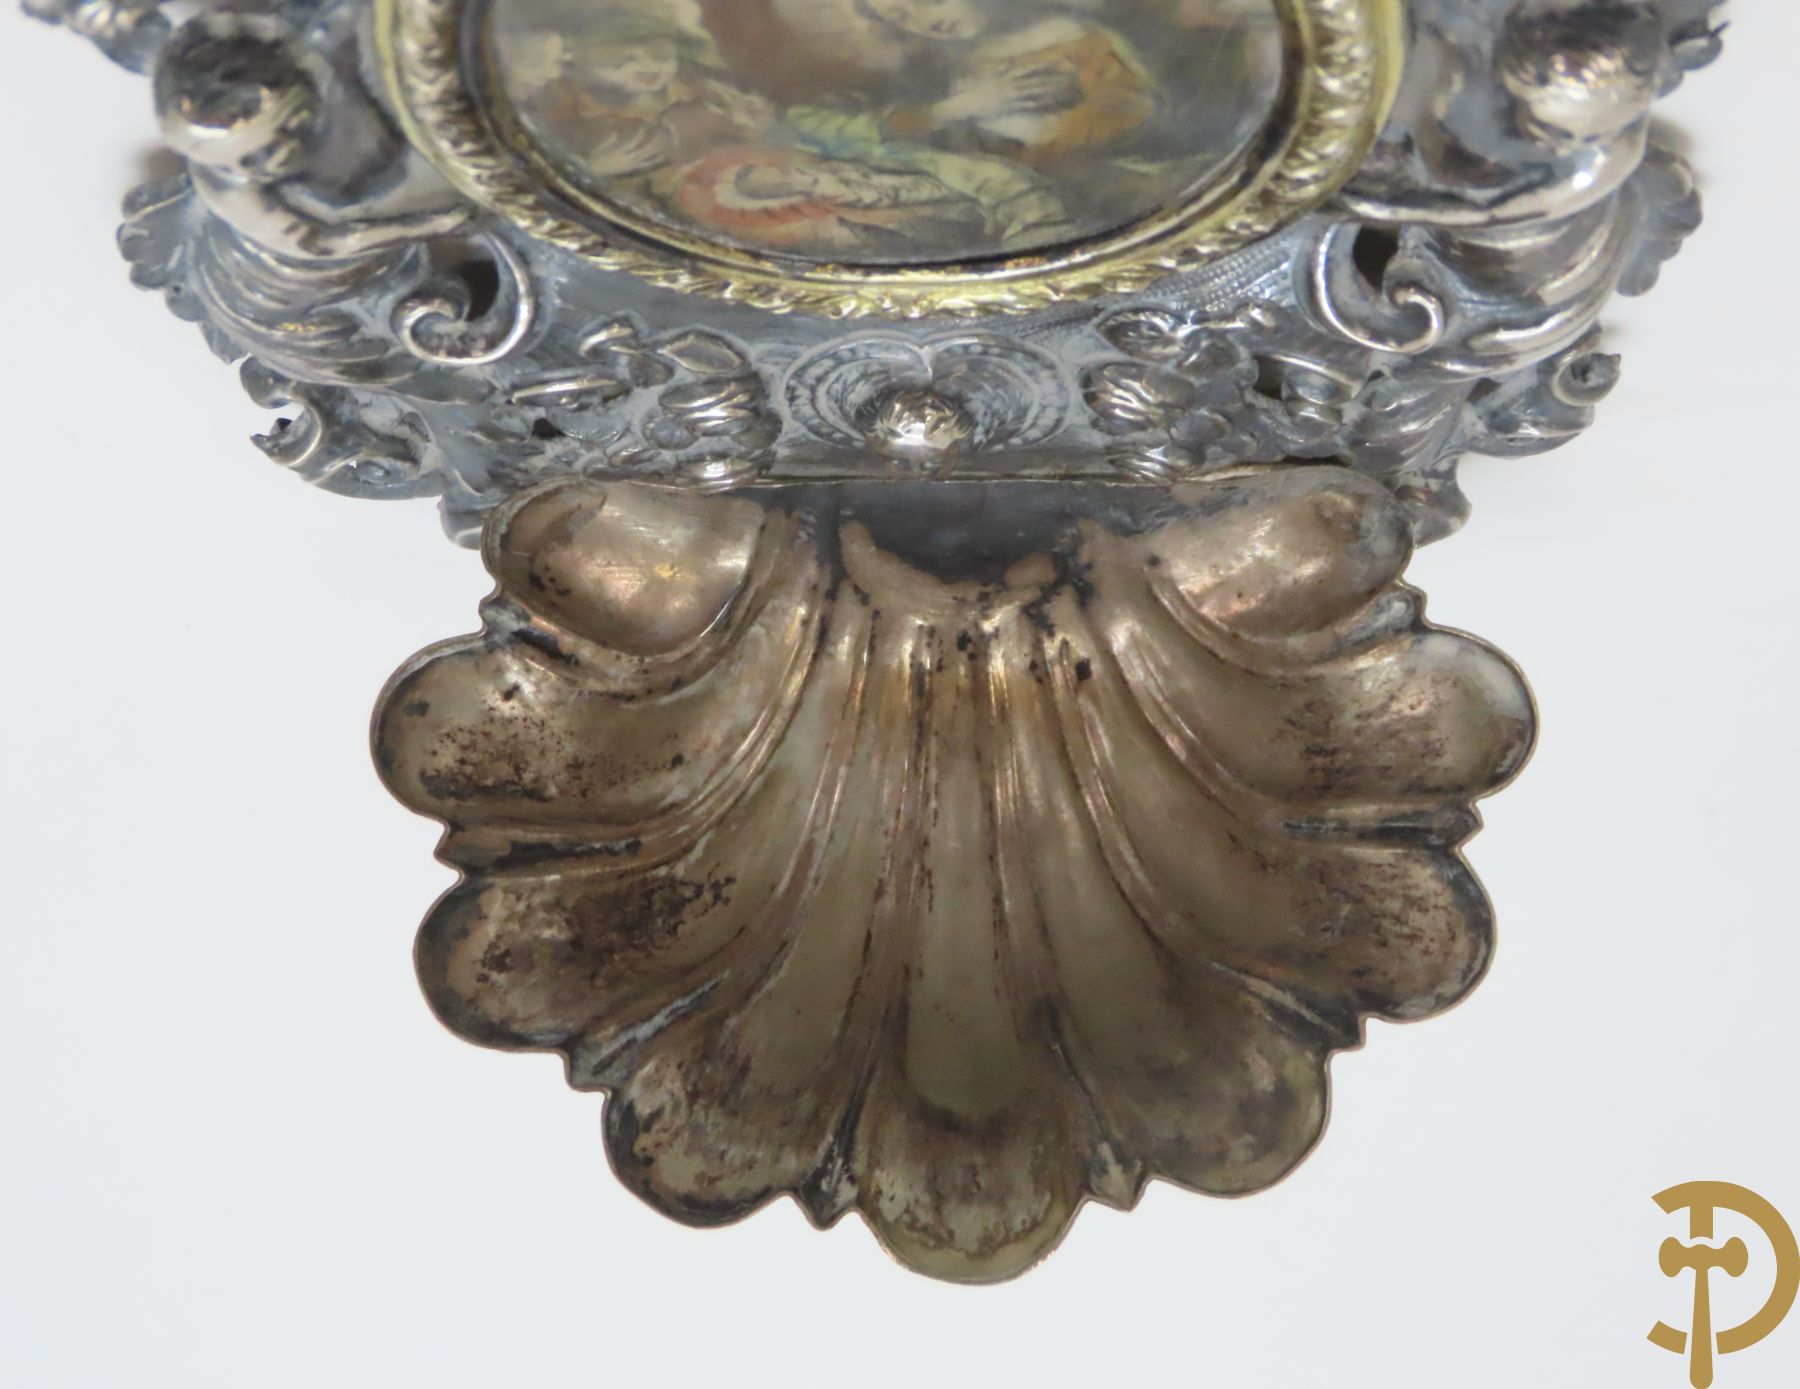 Paar massief zilveren wijwatervaten met versiering van engelen en bloemen, 18e